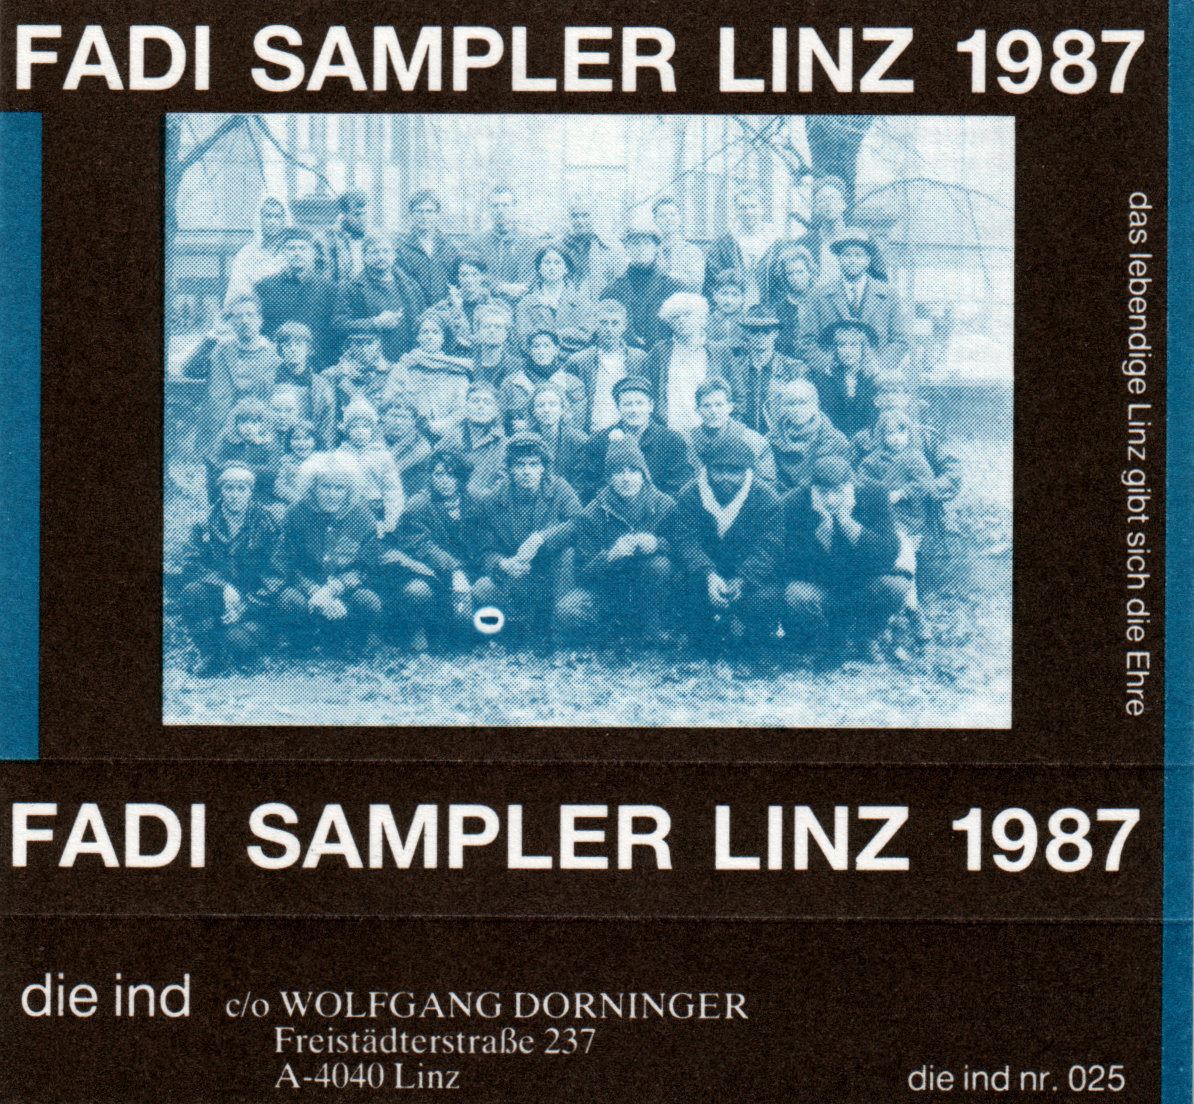 Compilation: "Fadi The Sampler Linz #4" - Die Ind 